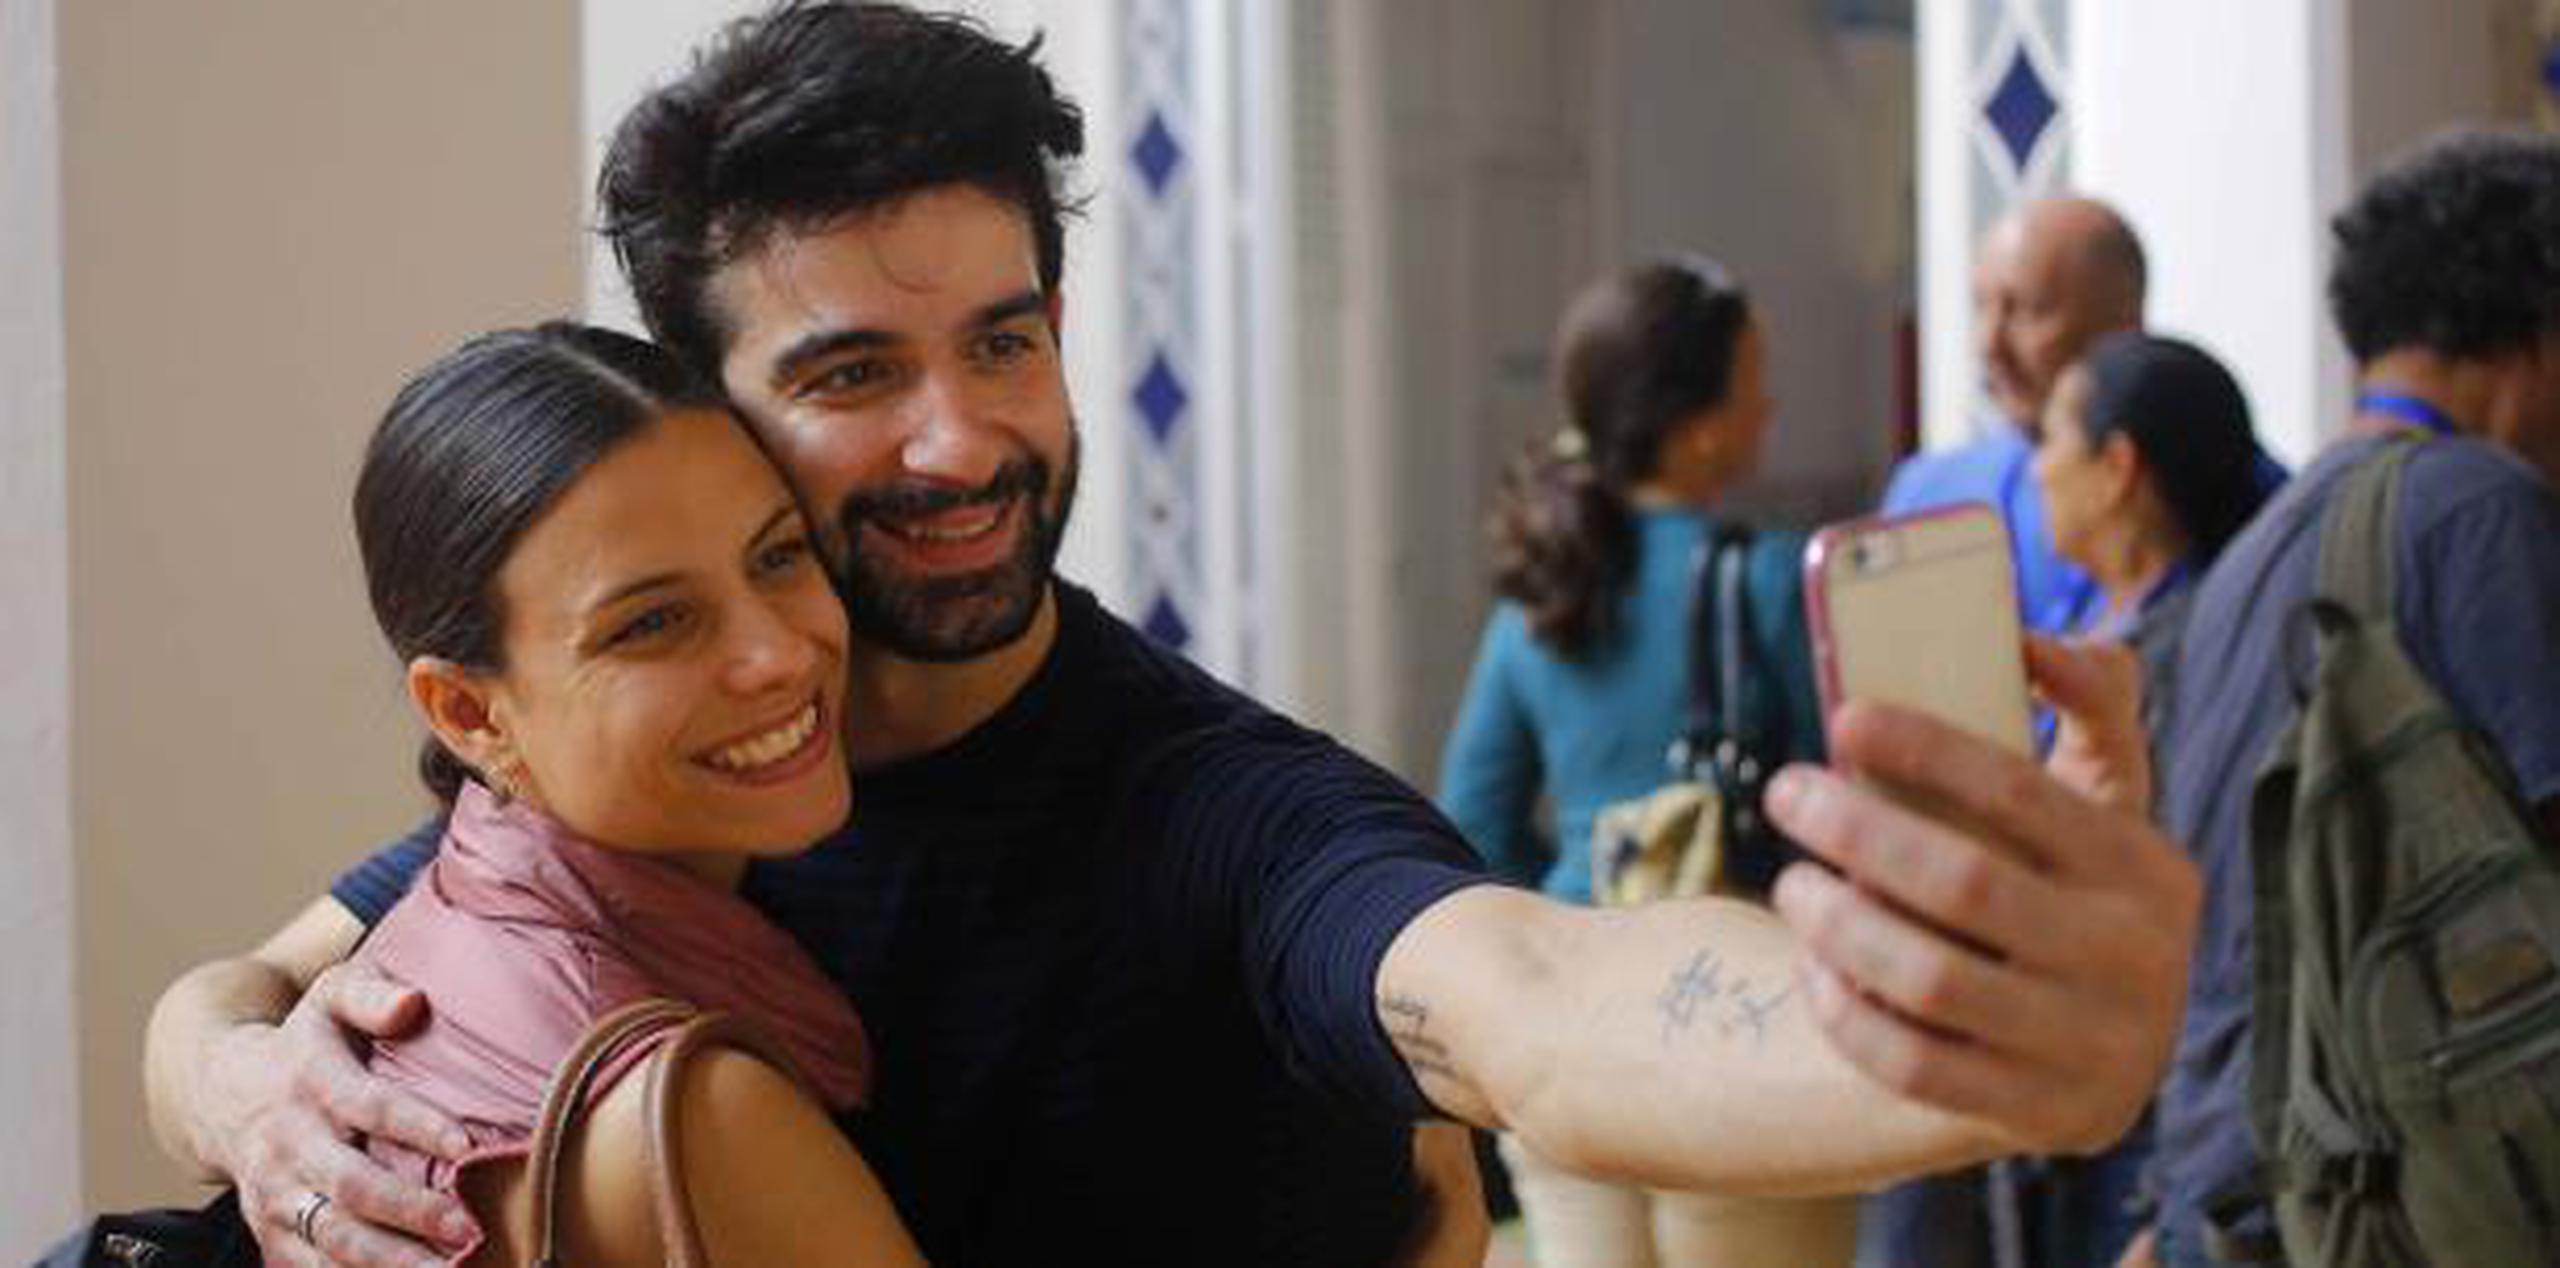 Rolando Sarabia y Yanela Piñera (izquierda), se toman un selfie en La Habana, Cuba. (AP)